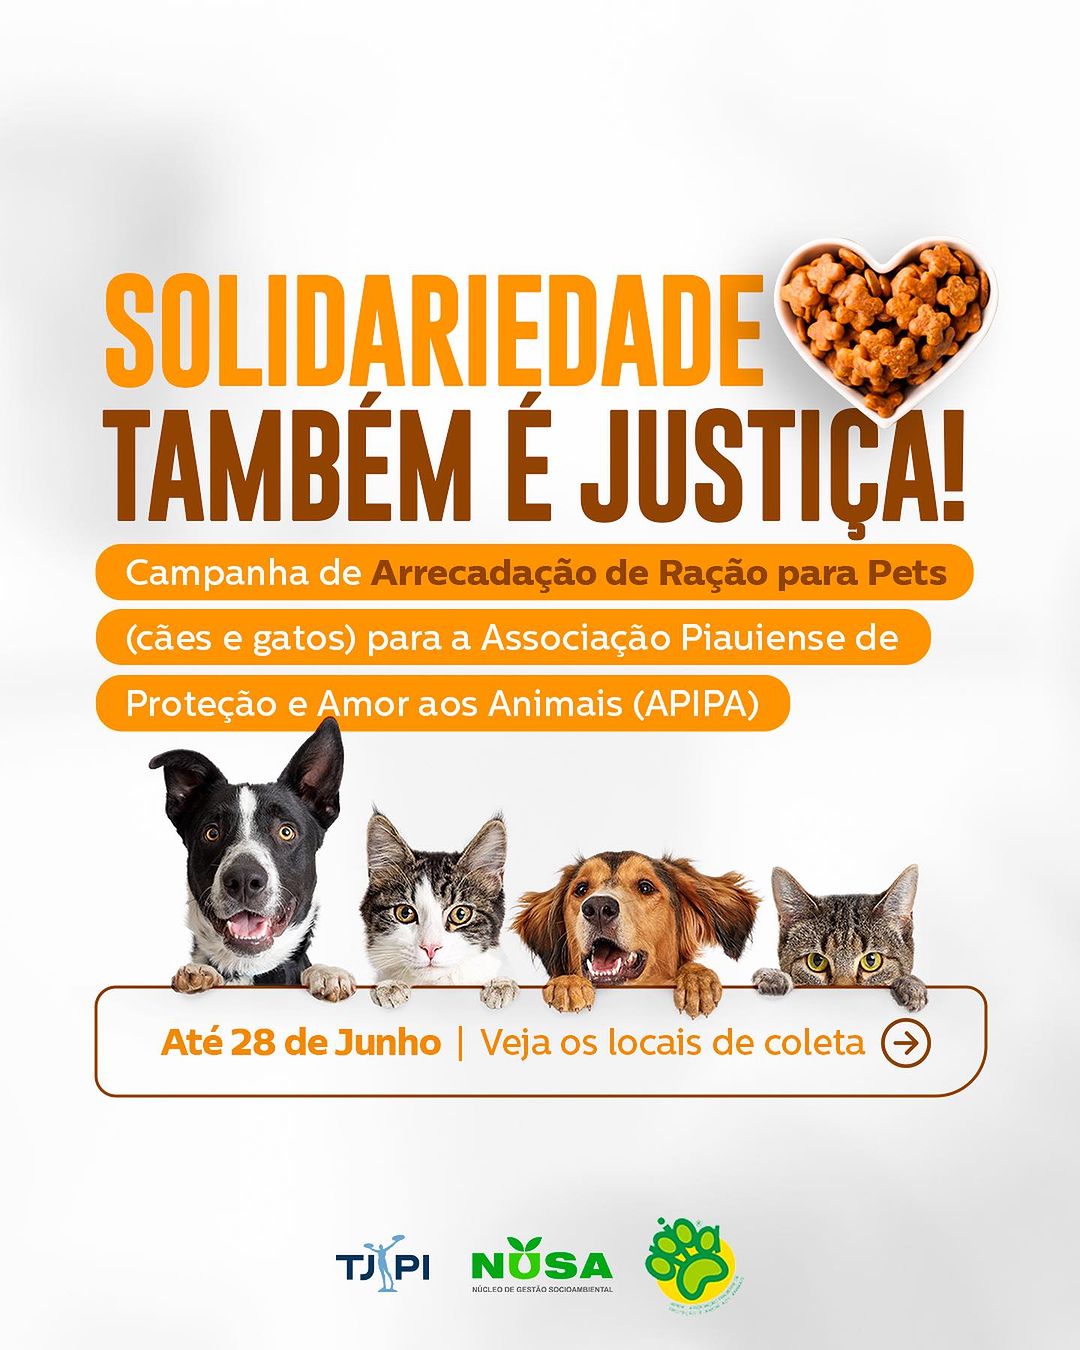 TJPI lança campanha de arrecadação de ração para cães e gatos